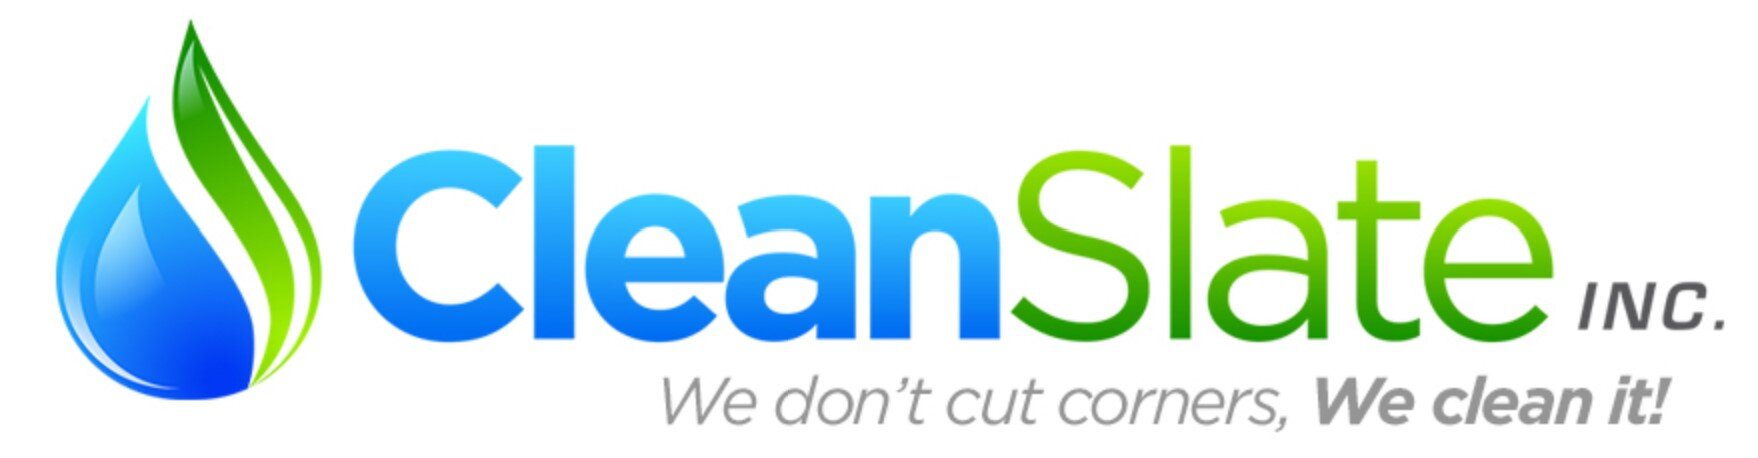 Clean Slate Inc.